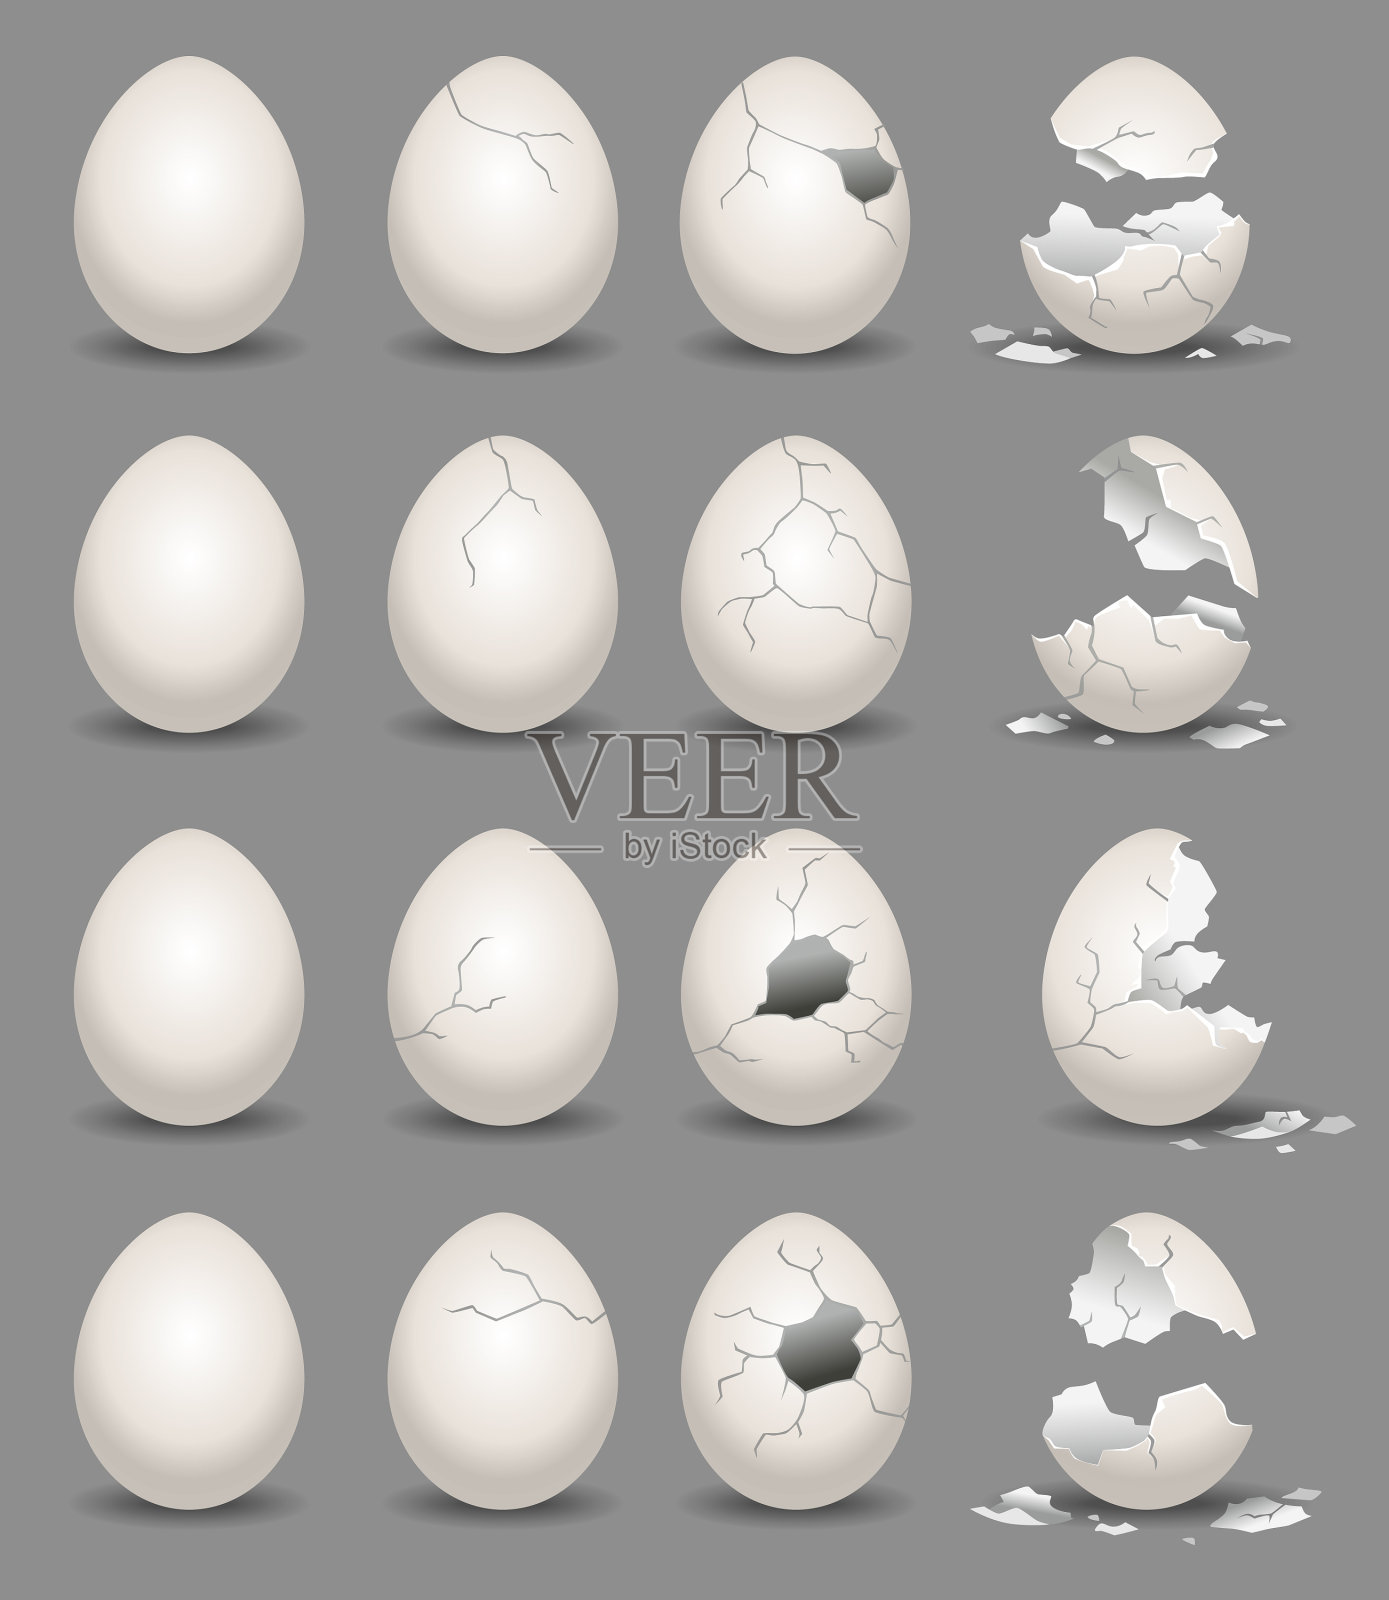 容器中的鸡蛋 卡通矢量图插图 向量例证. 插画 包括有 蛋壳, 烹调, 有机, 滋补, 容器, 动画片 - 188713563